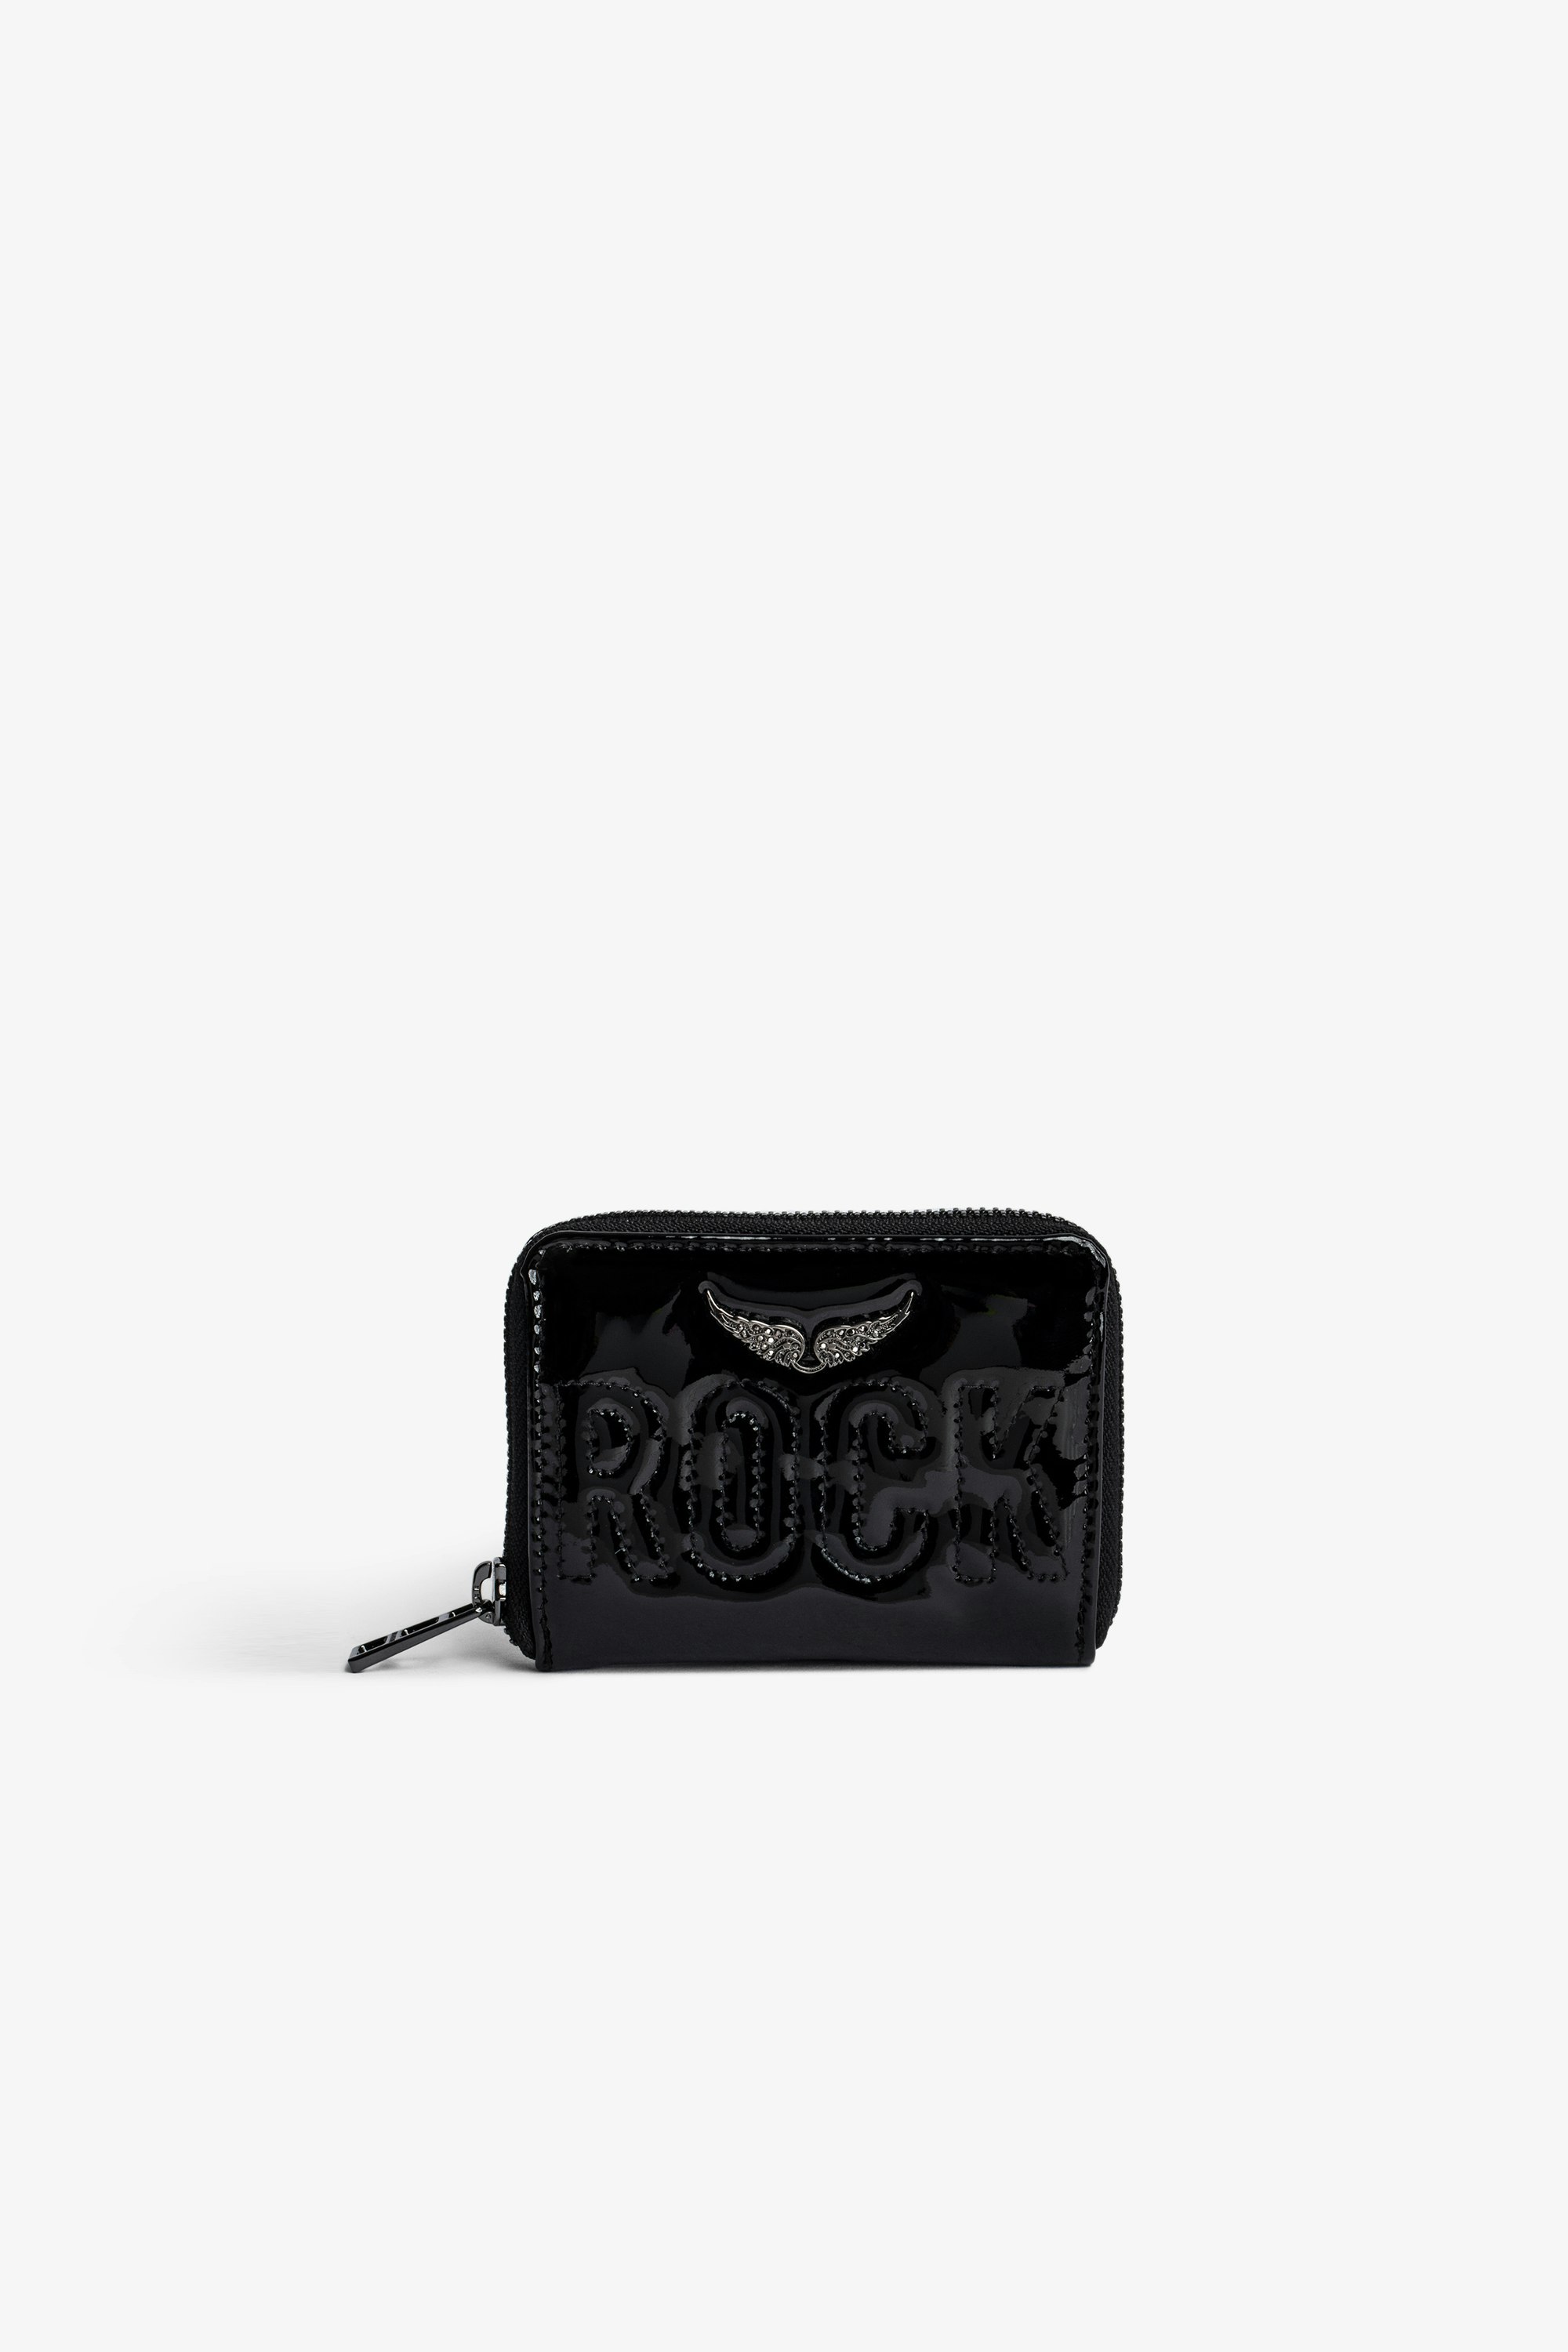 Portamonete Mini ZV Portamonete con zip in pelle nera lucida con scritta "Rock" impunturata e charm a forma di ali incastonate di strass donna